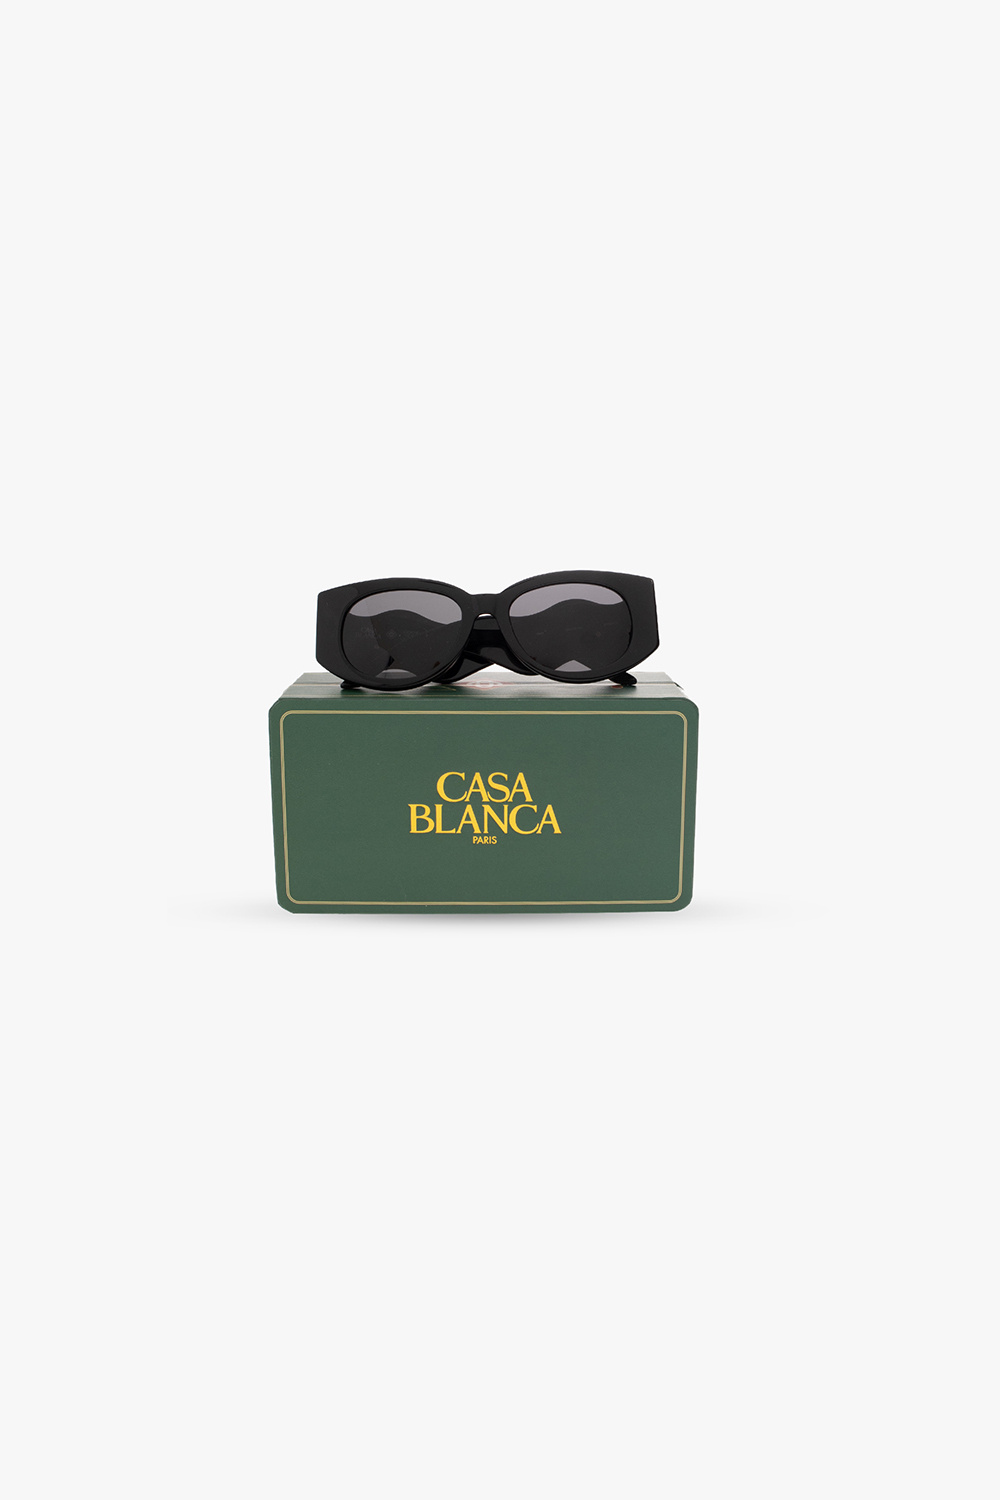 Casablanca vuarnet cap 1818 round sunglasses item